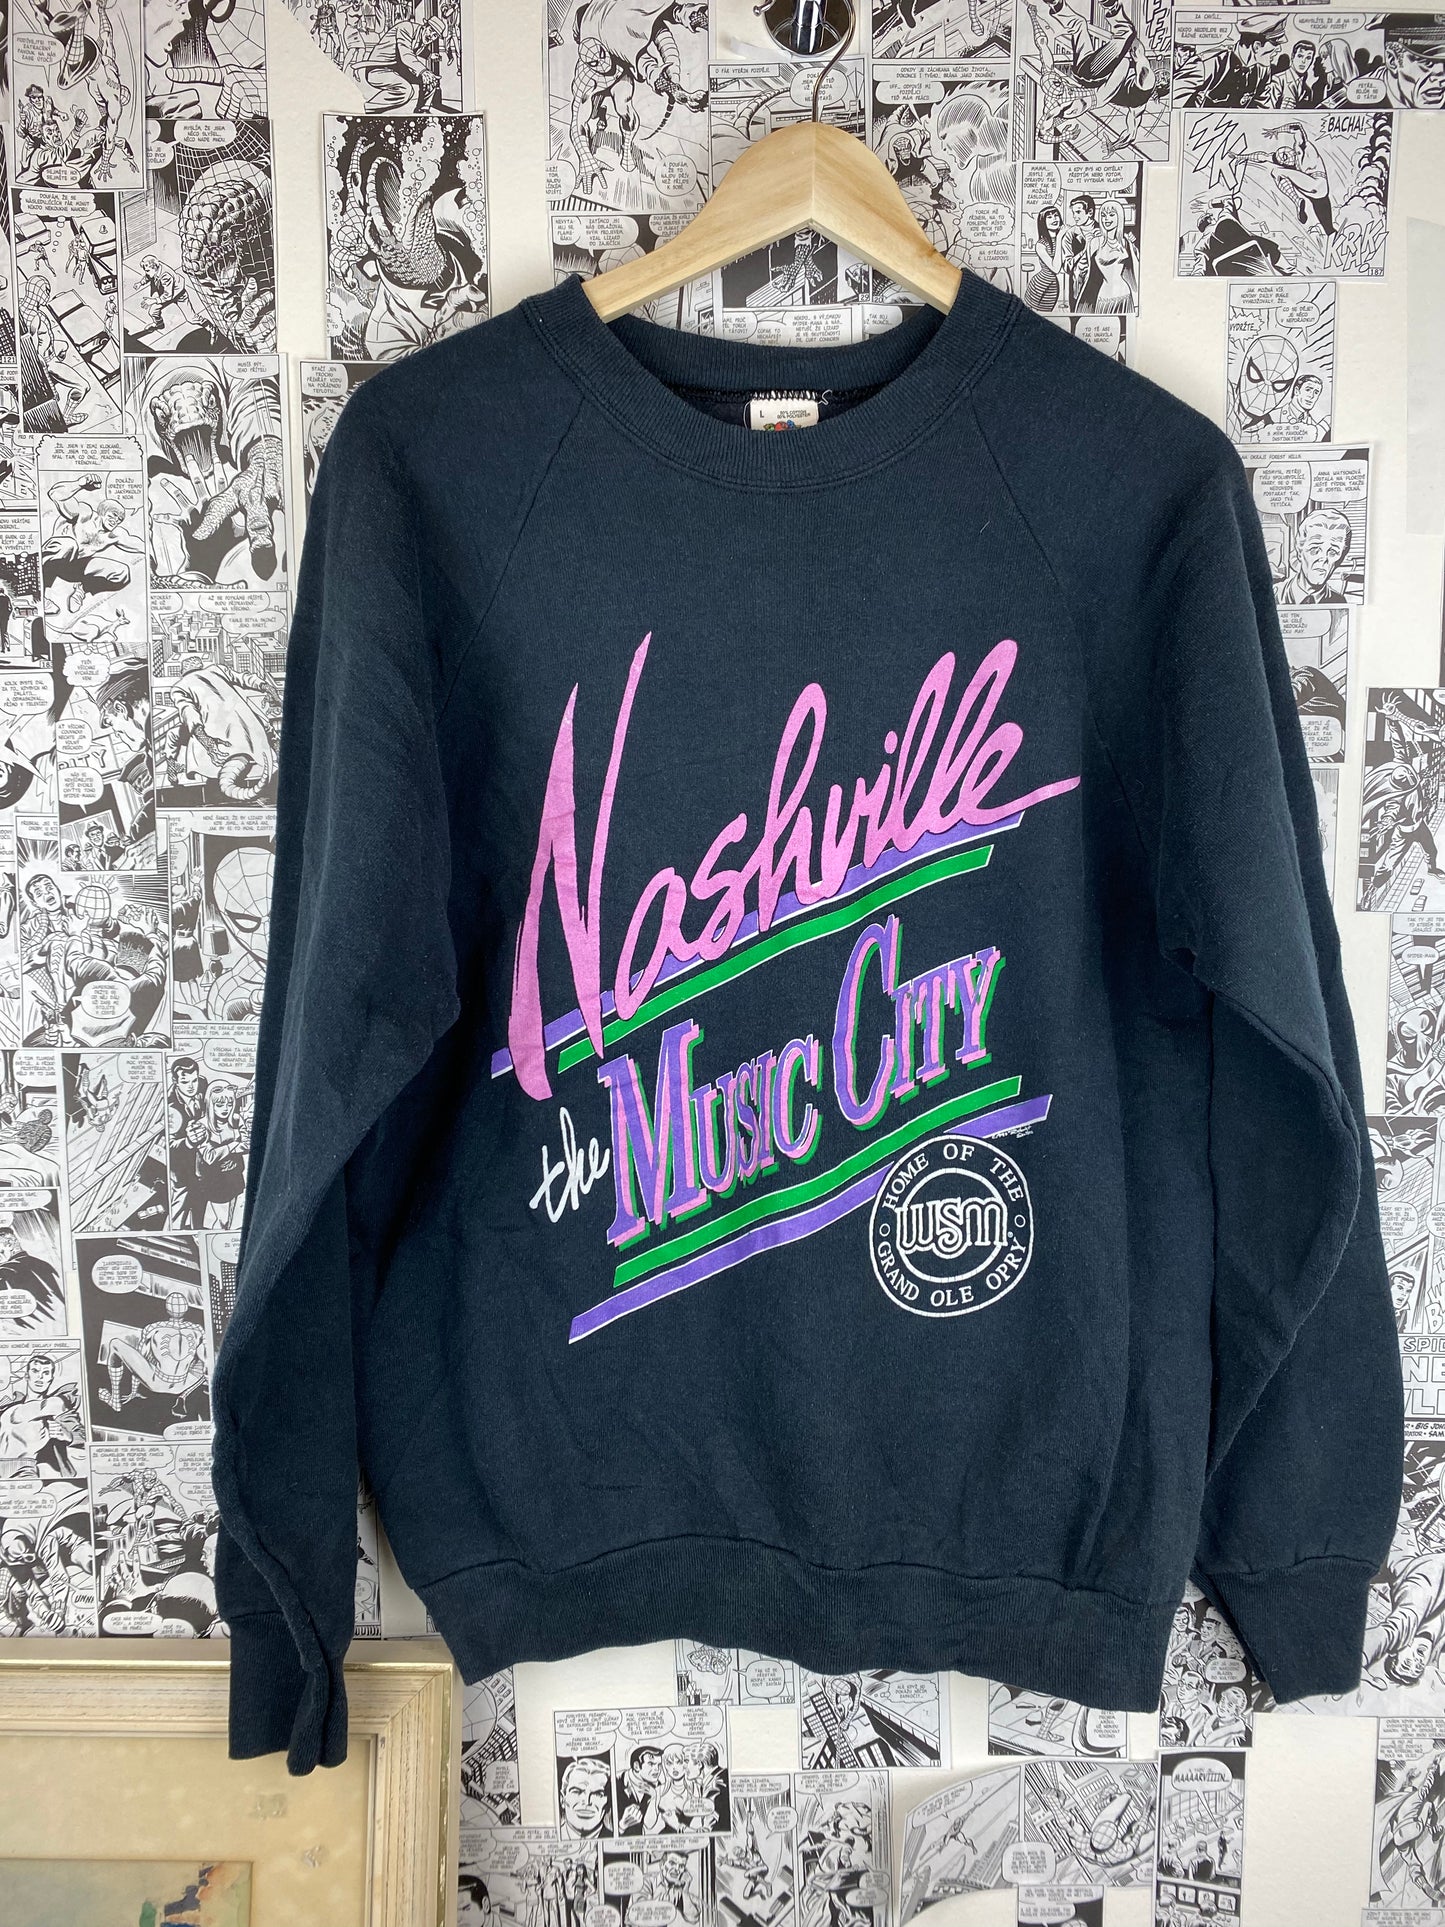 Vintage “Nashville - the music city” 90s crewneck - size L